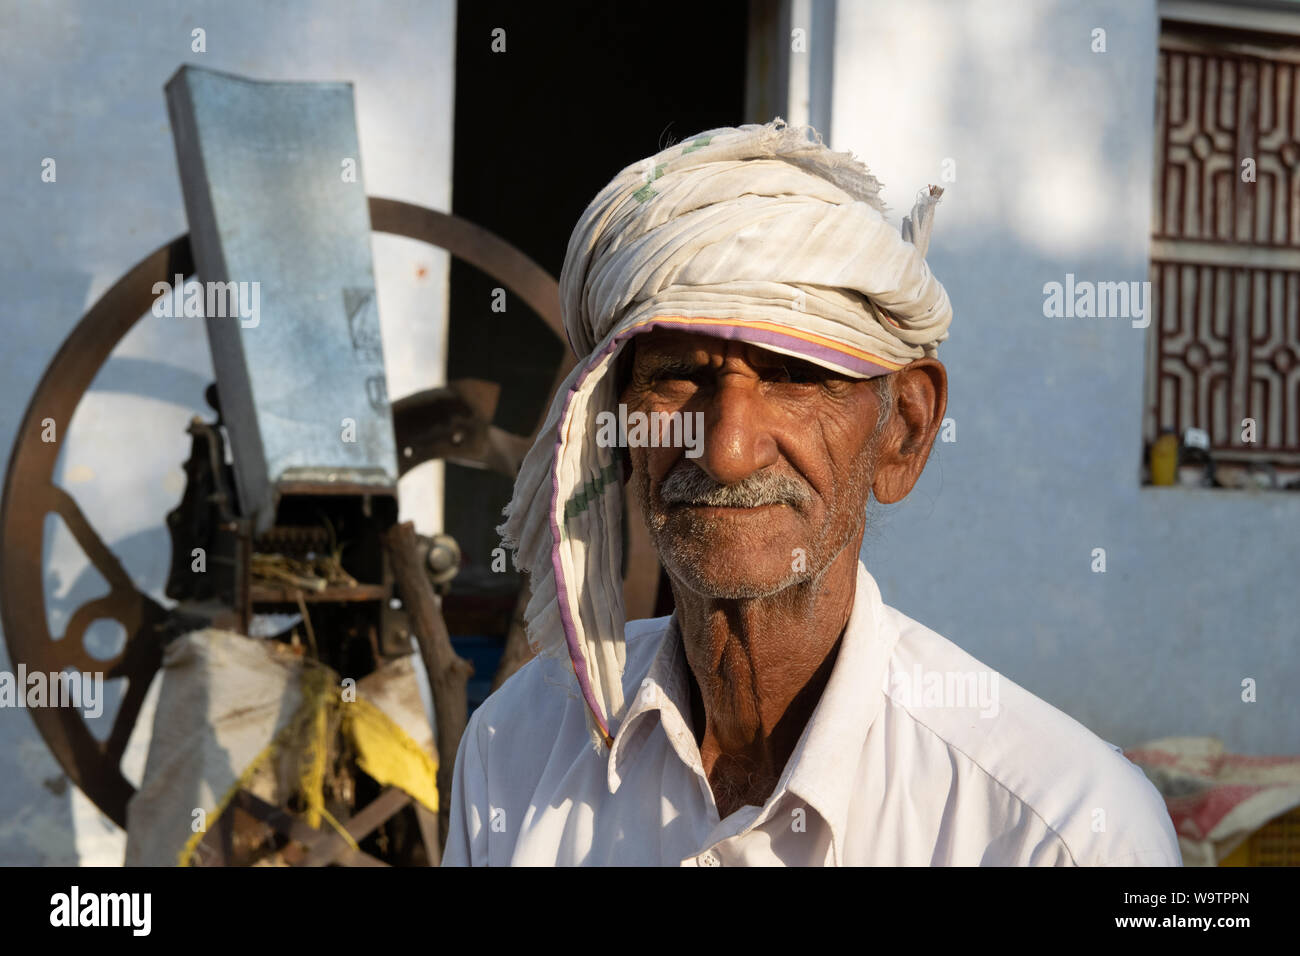 Ein alter Mann sitzt in einem Hof vor seinem Haus. Auf dem Kopf trägt er ein Tuch (Turbante). In Straßenszene Mandawa (Rajasthan) Foto Stock